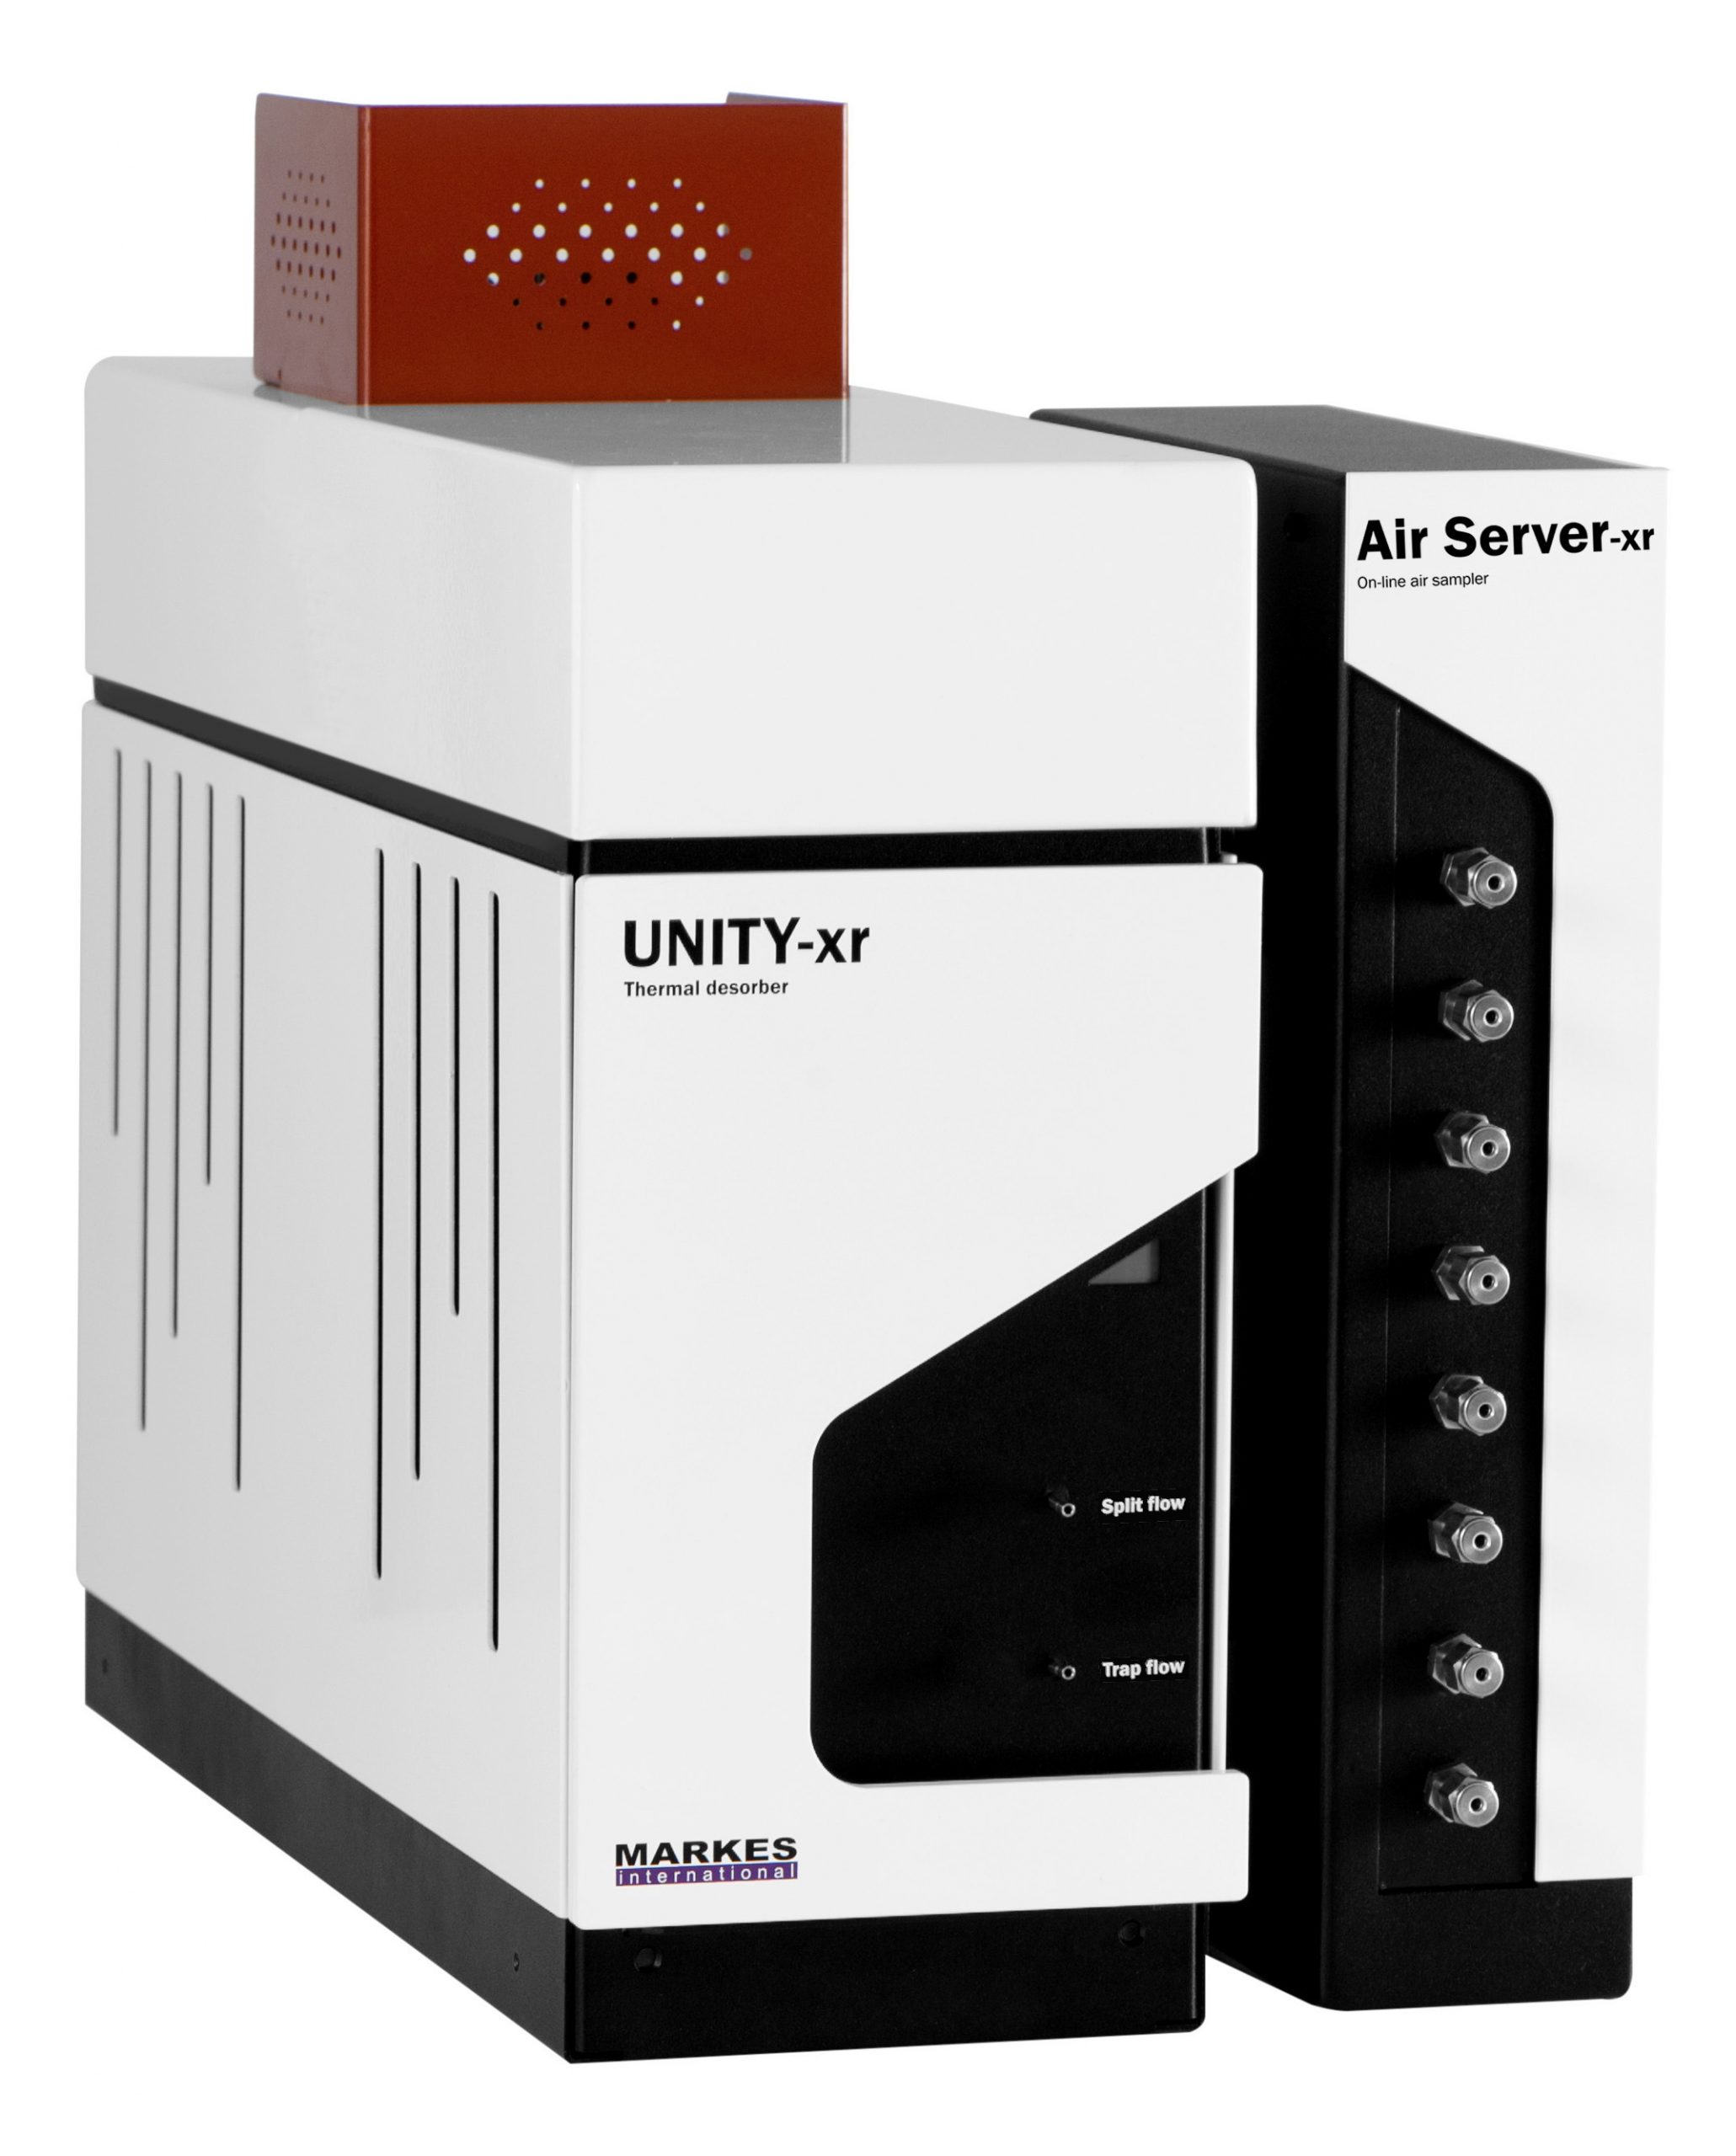 Air Server-xr – Amostrador on-line para dessorção térmica